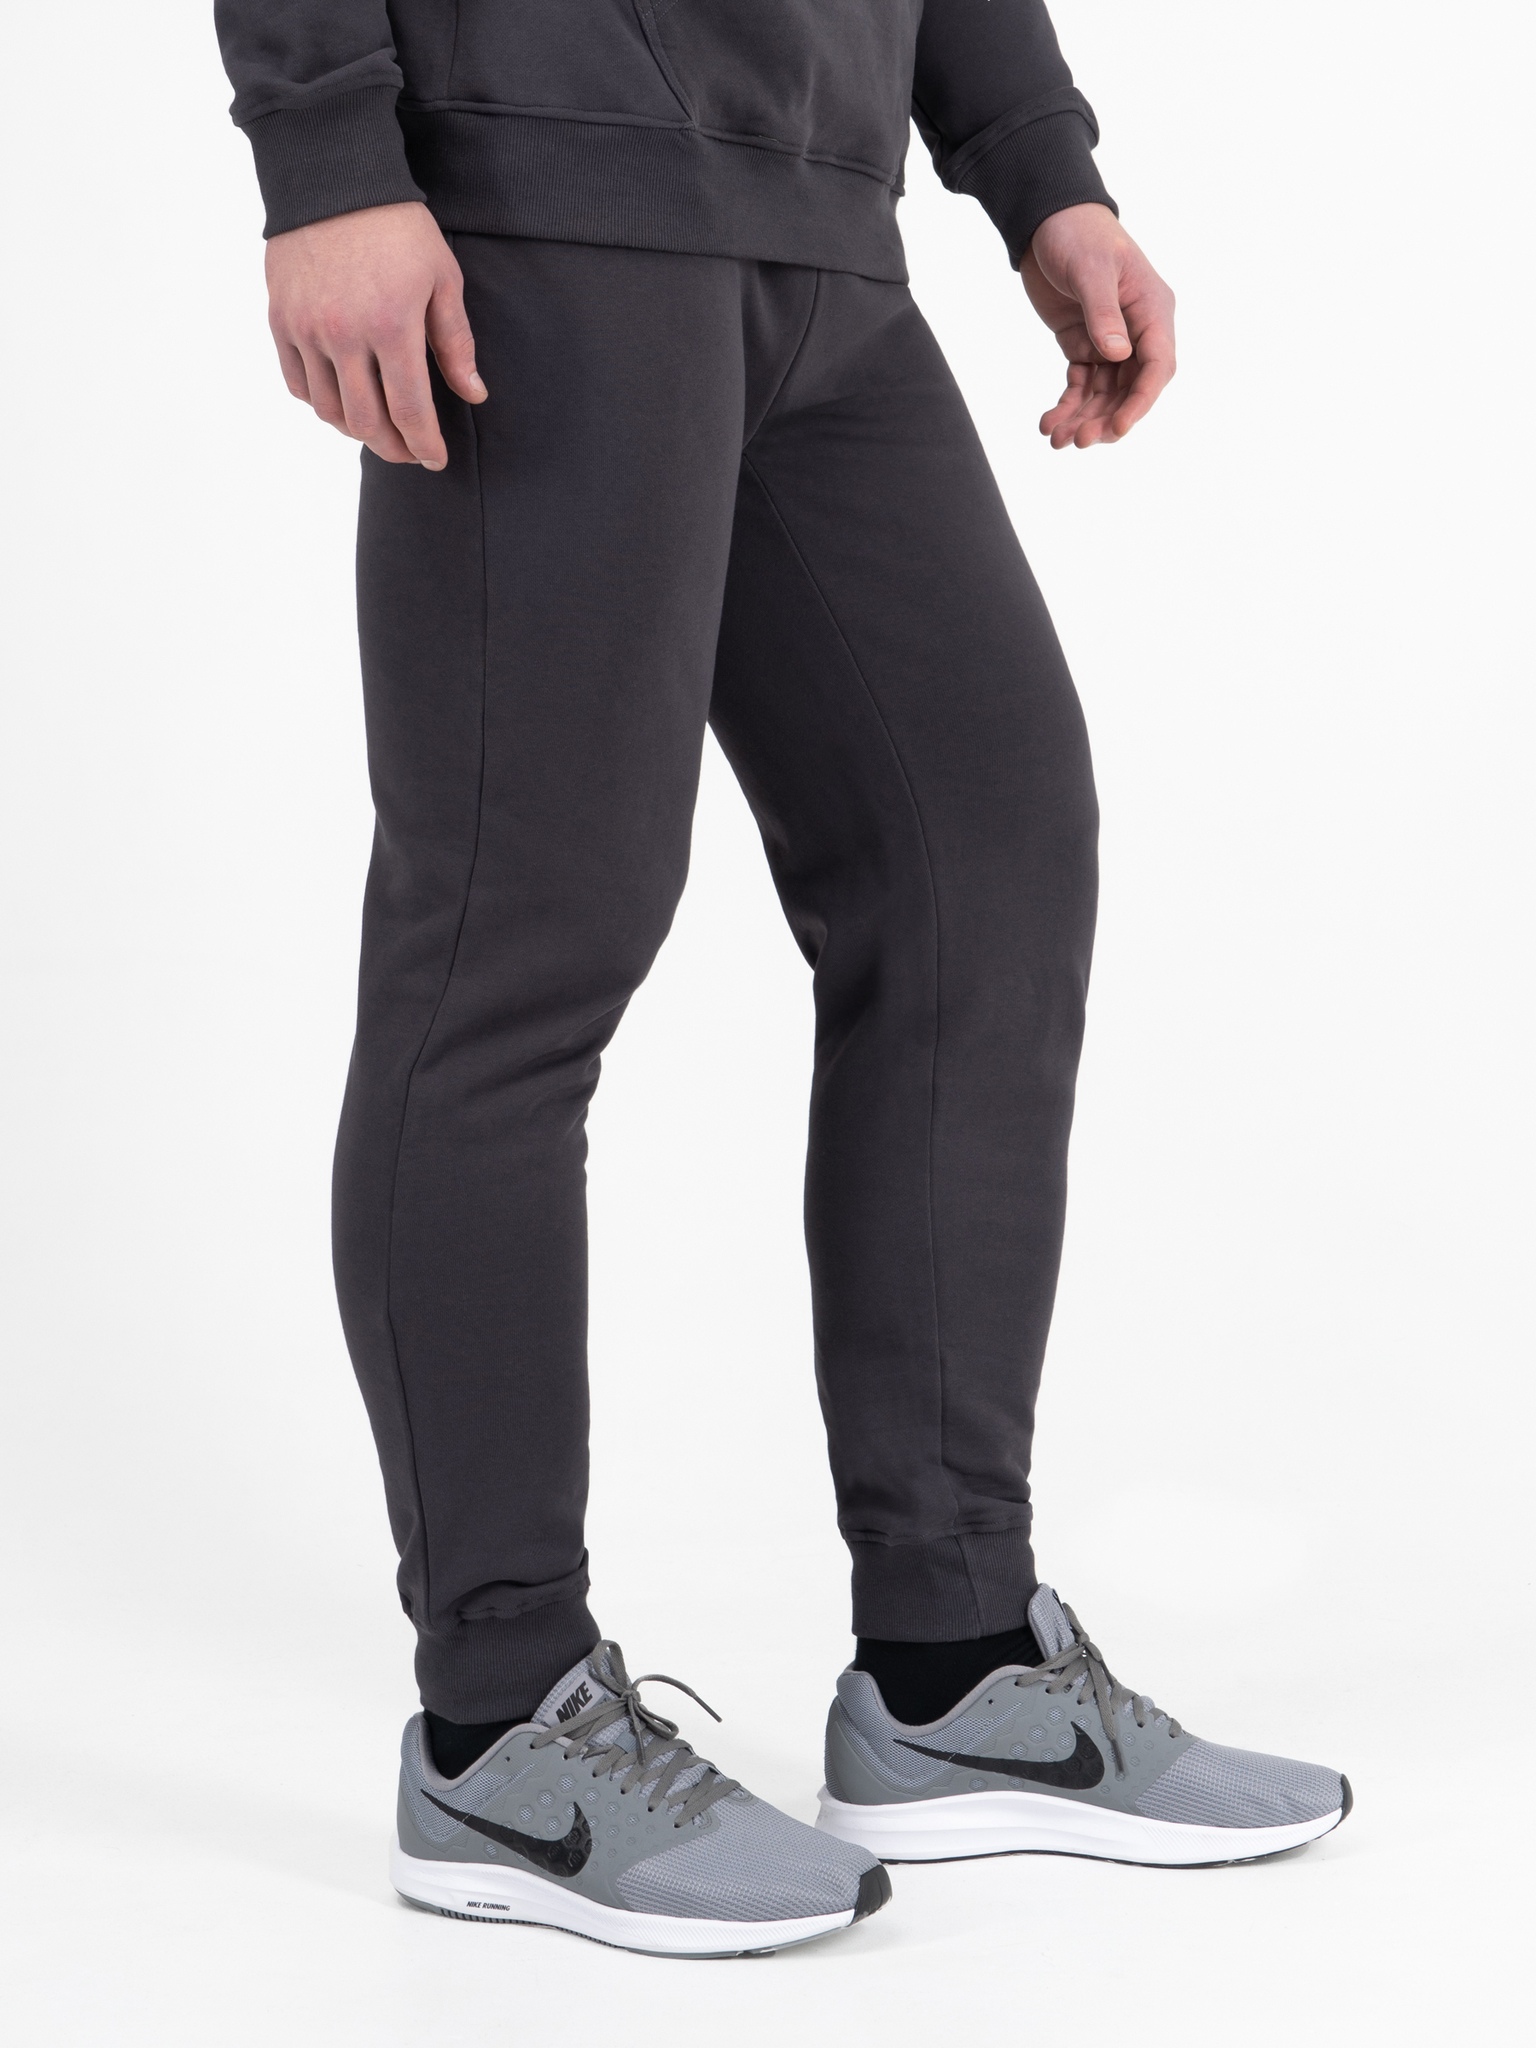 фото Спортивные брюки мужские великоросс bm серые 48 ru